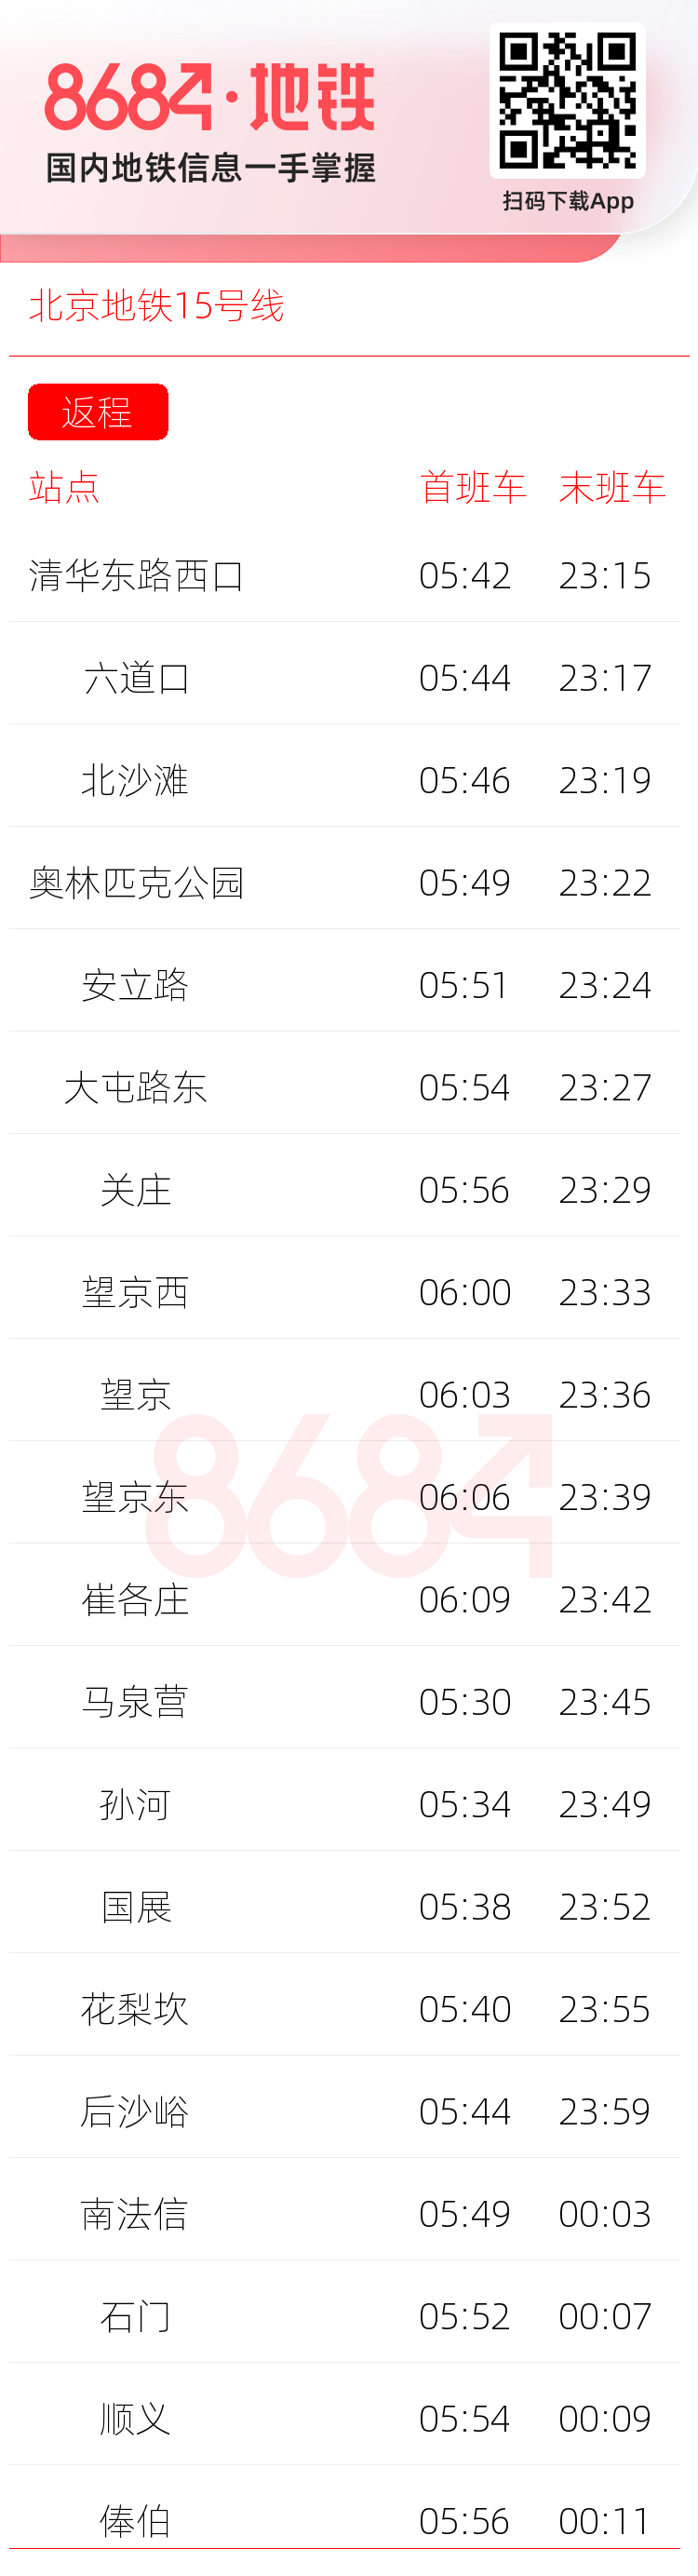 北京地铁15号线运营时间表